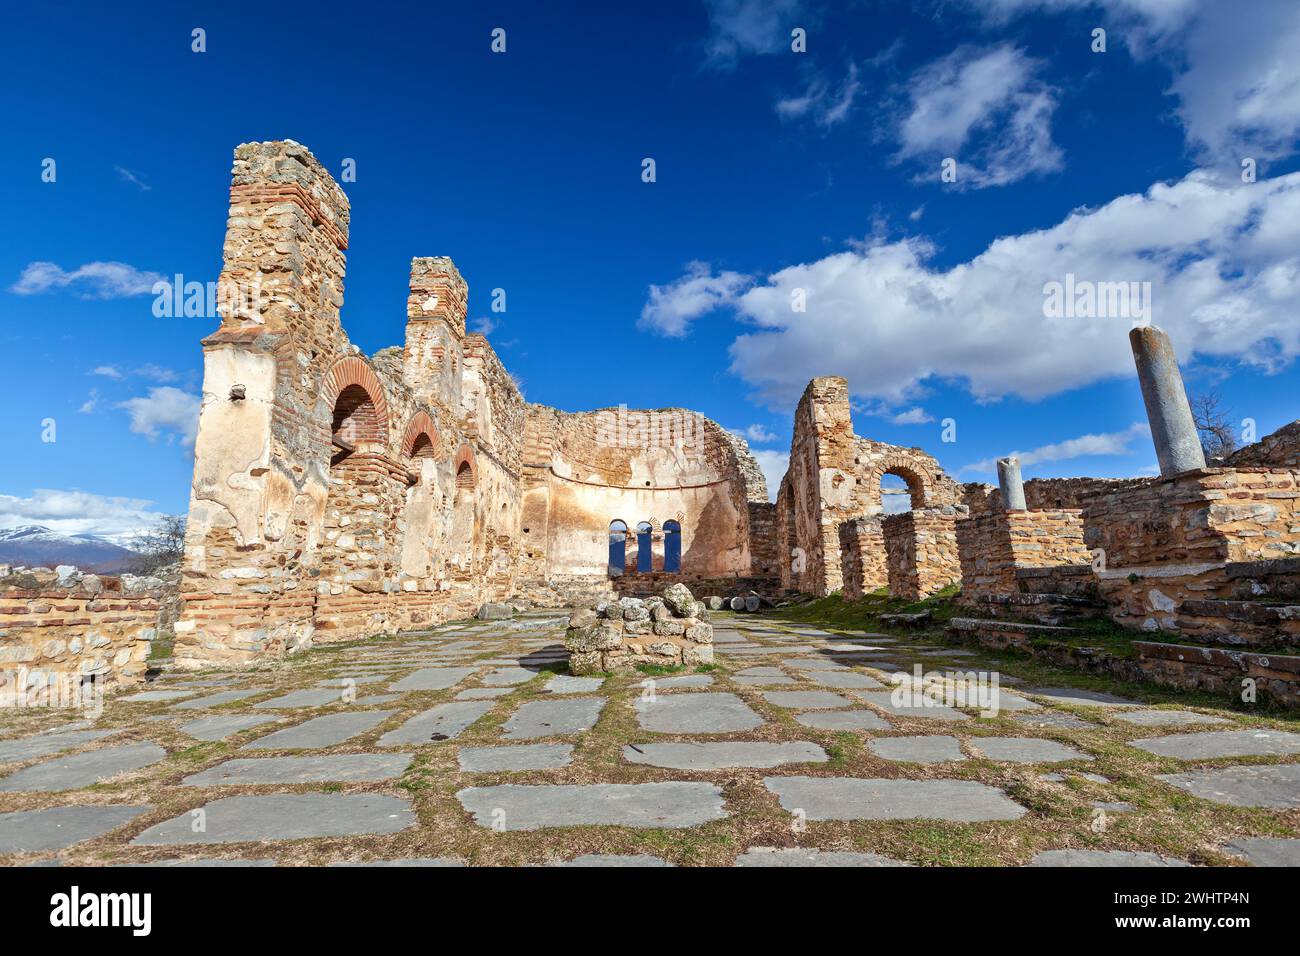 La basilica bizantina di Agios Achilios (Sant'Achille), sull'isola omonima nel piccolo lago Prespa, nella prefettura di Florina, Macedonia regio Foto Stock